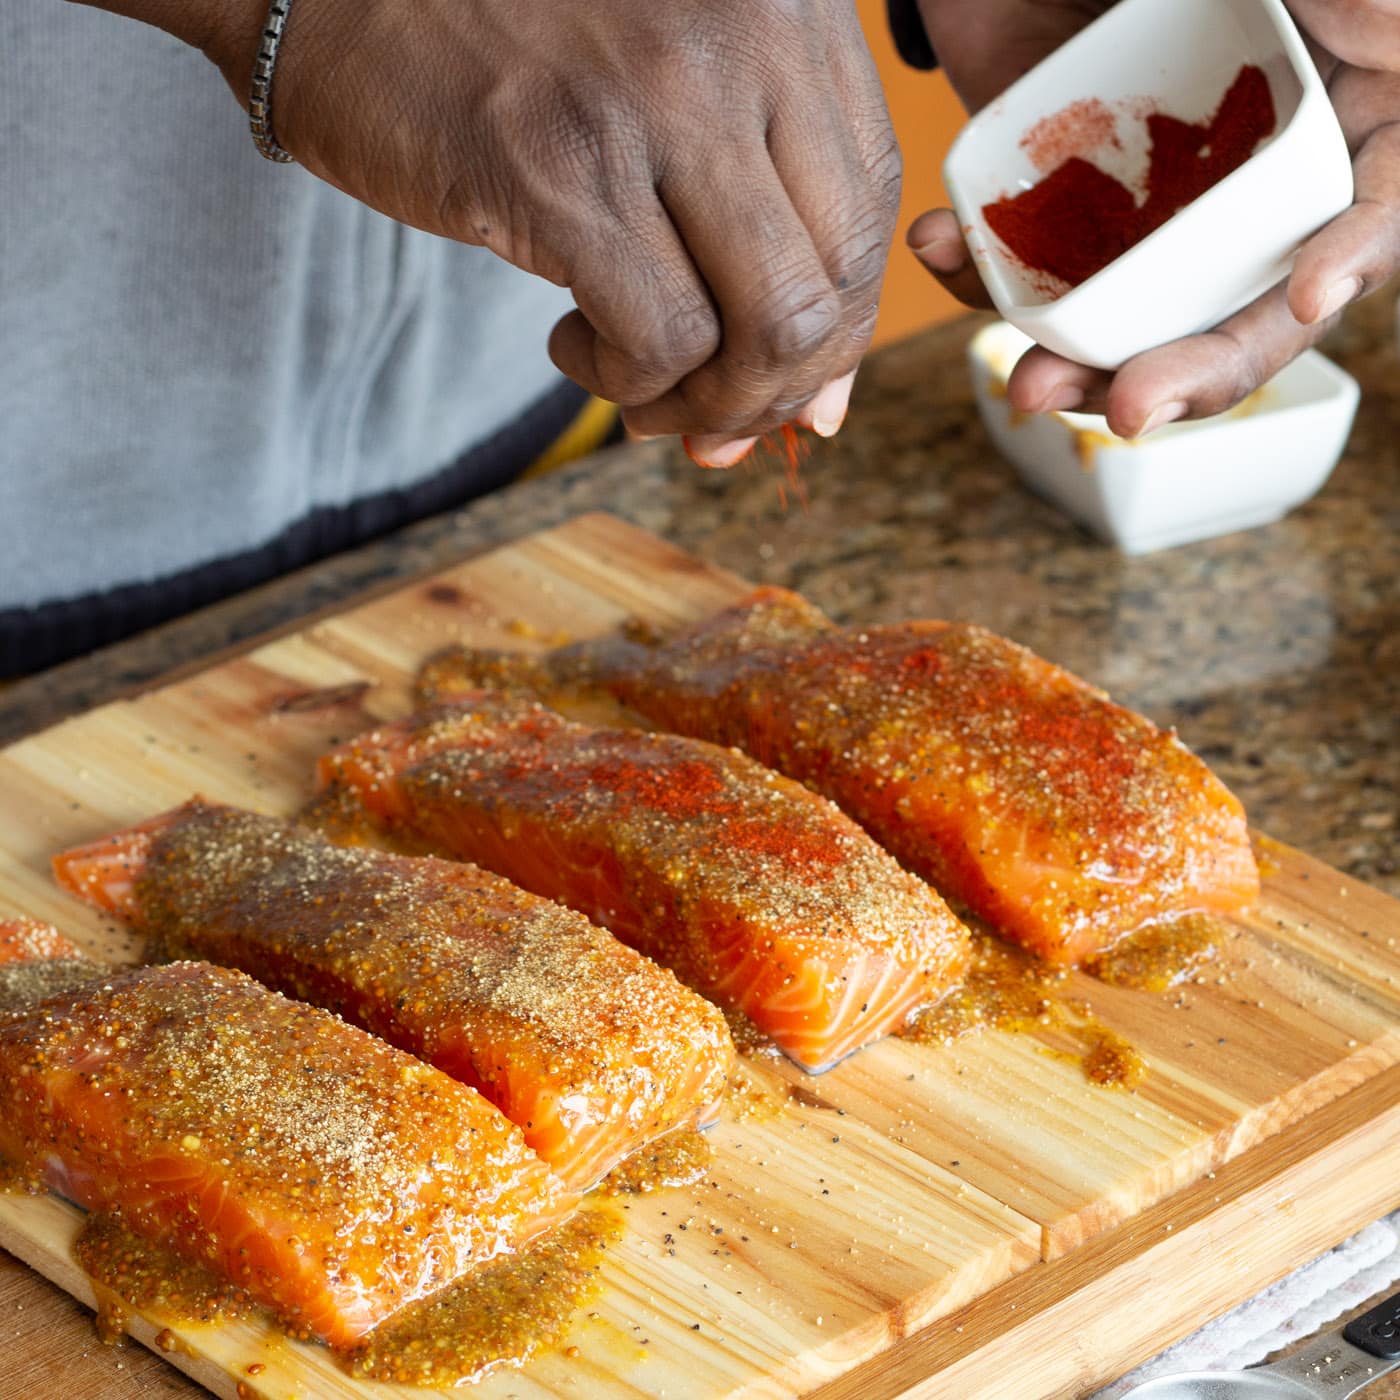 sprinkling paprika onto salmon filets